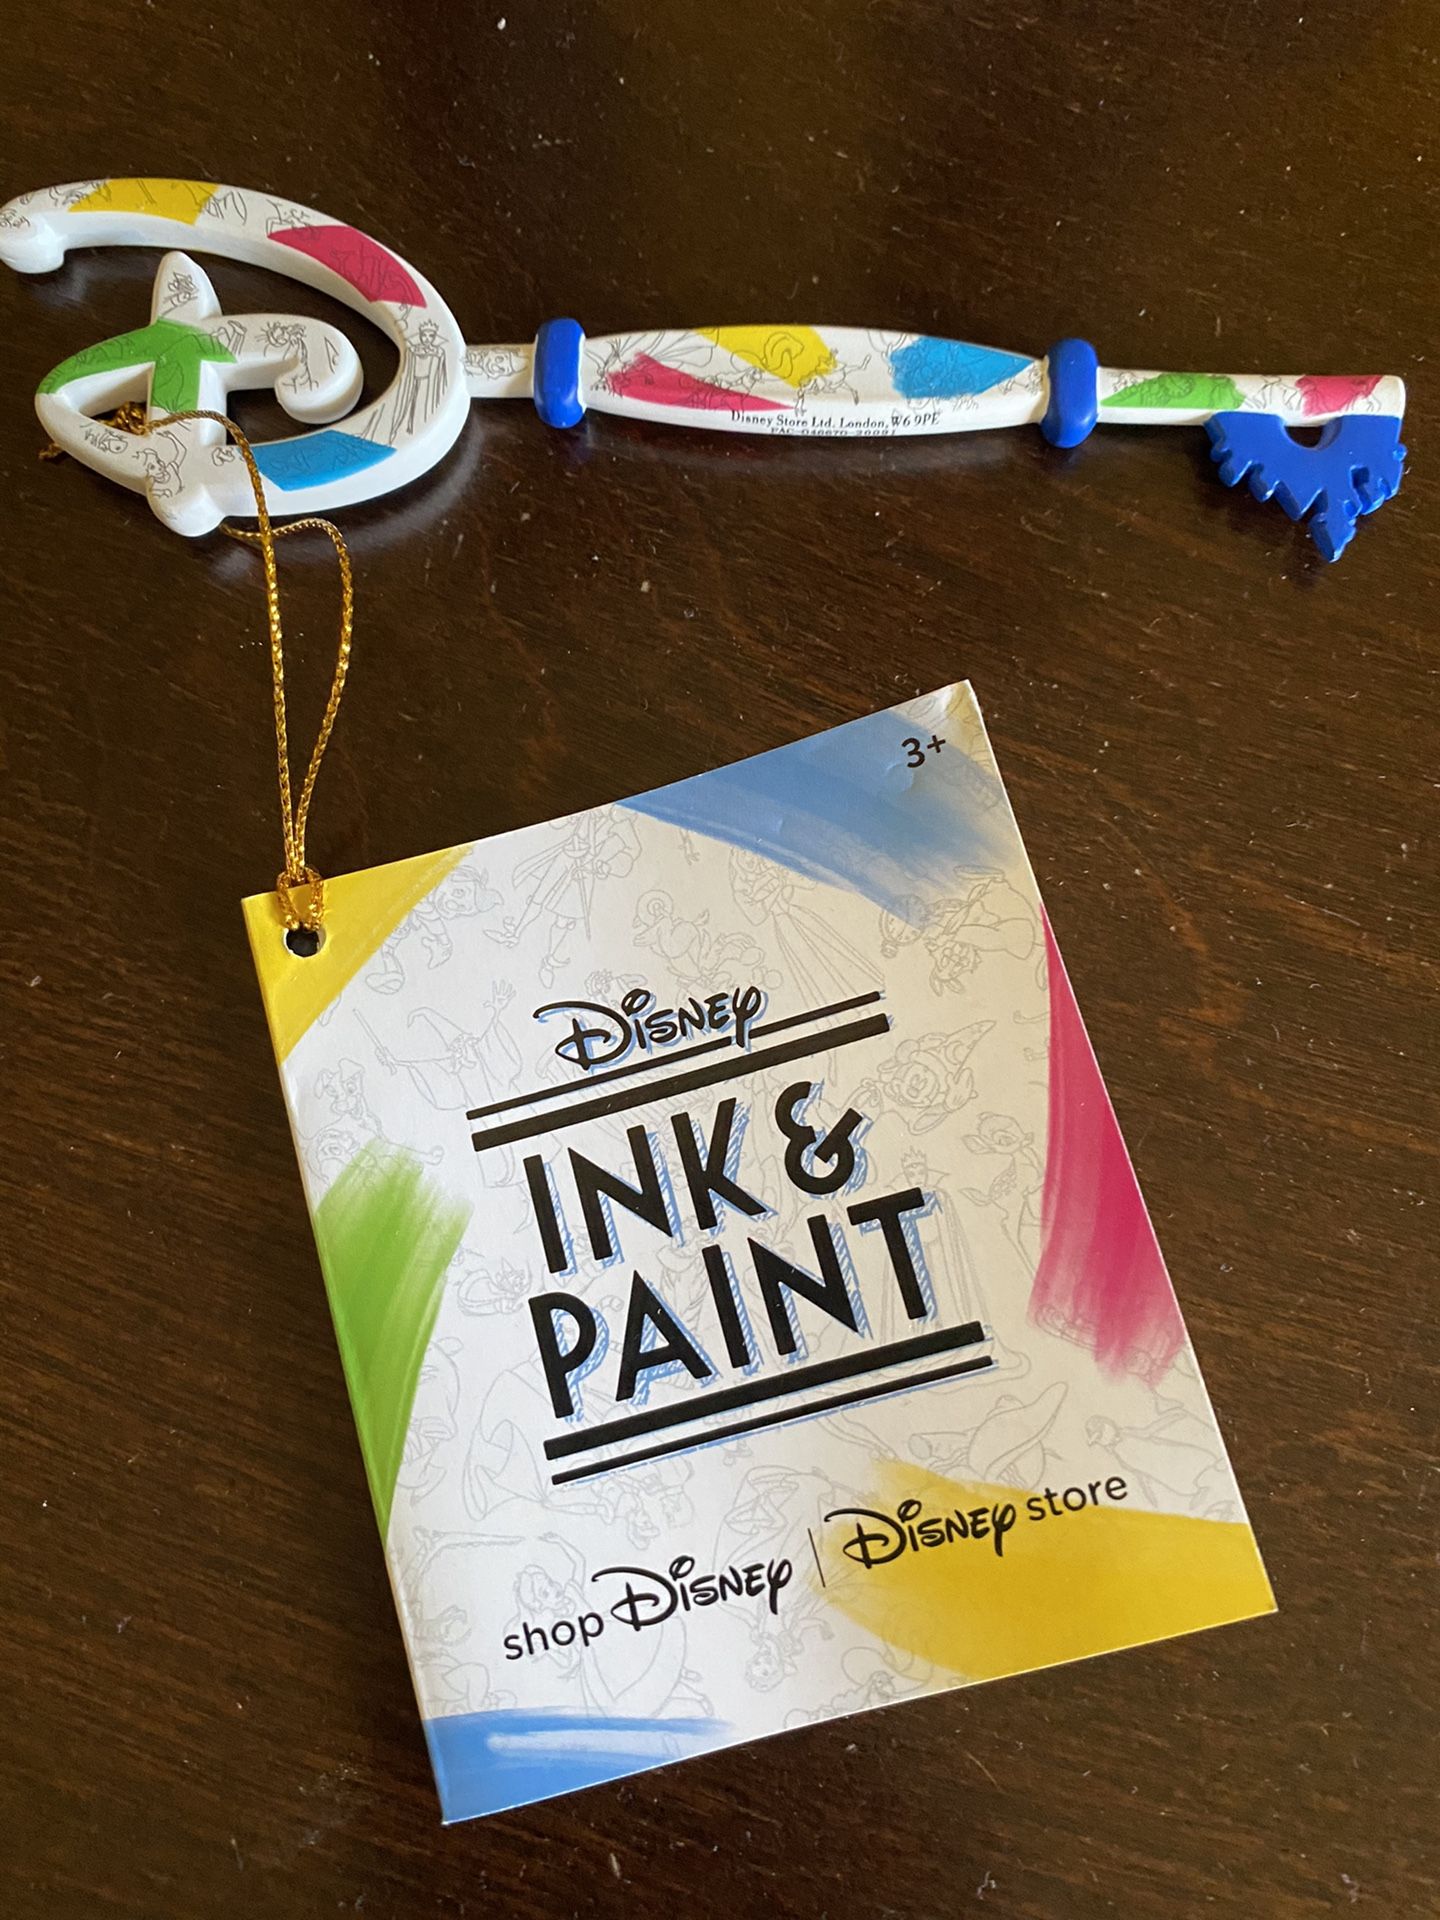 Disney Ink & Paint Key UK release